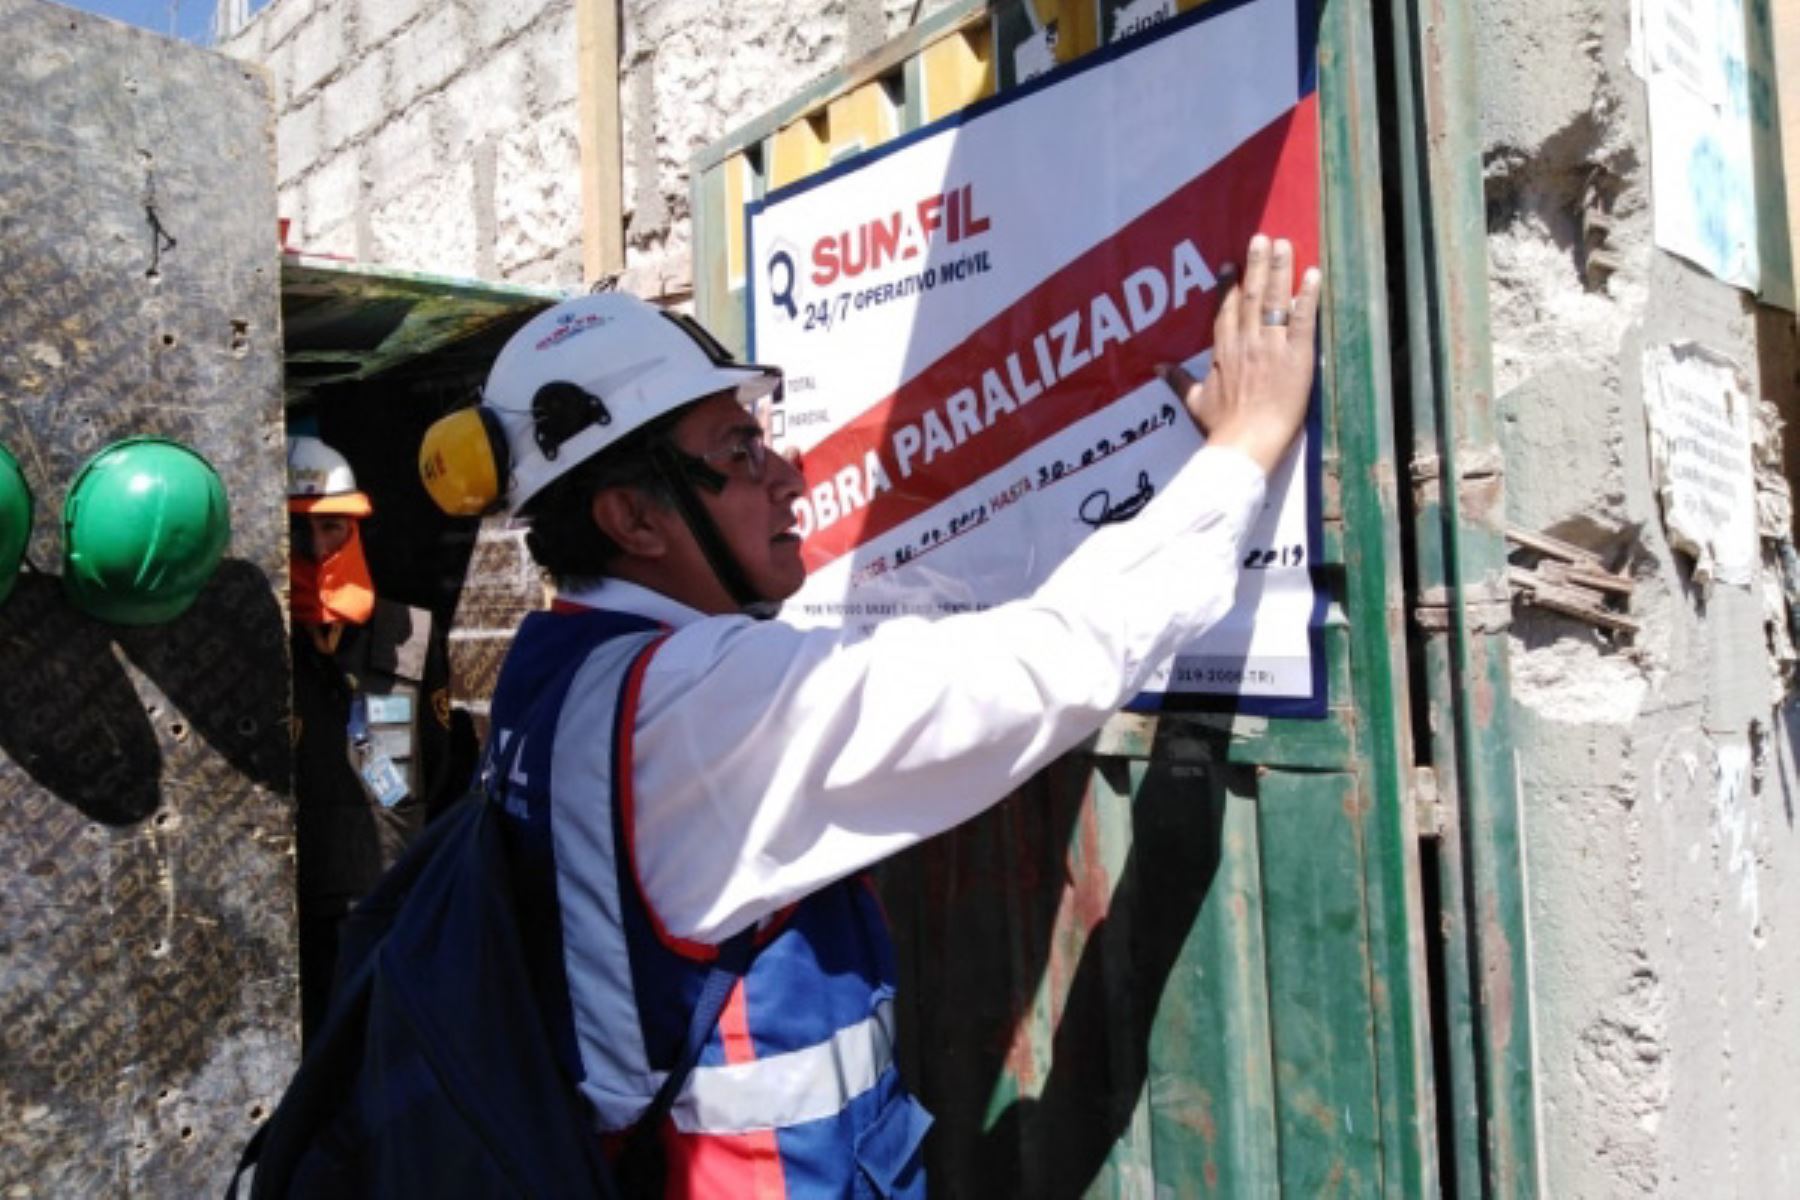 Sunafil detecta trabajadores en riesgo grave y paraliza obra de construcción en Arequipa